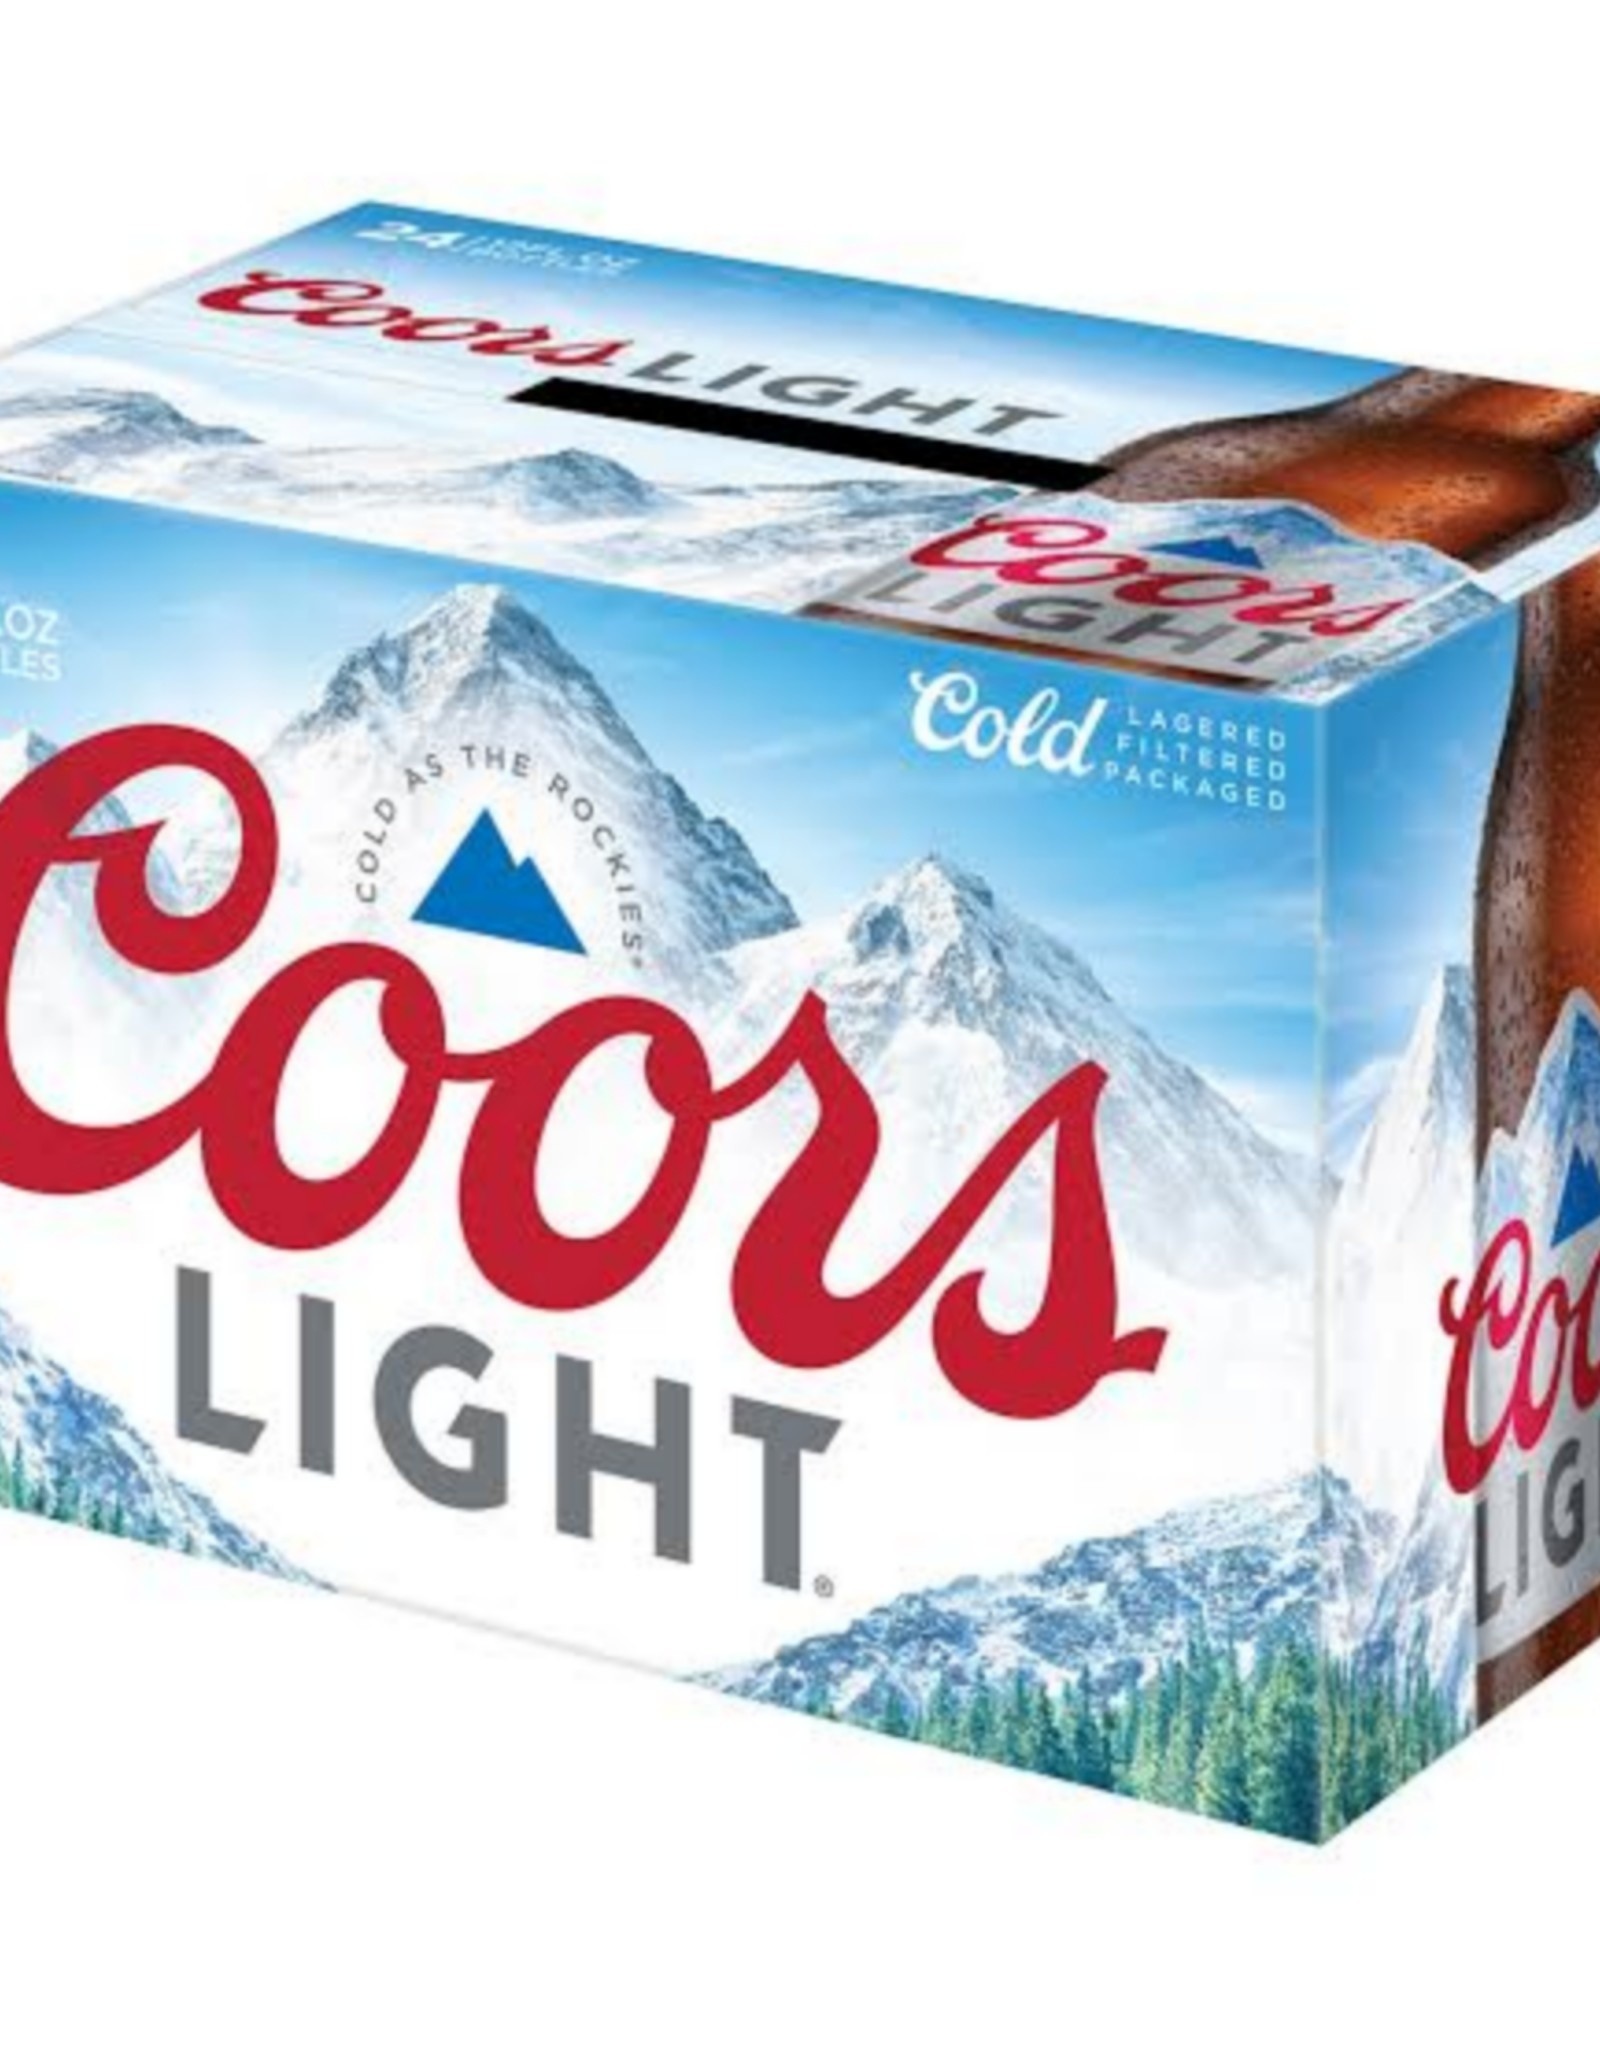 Coors Coors Light - 12oz - 24pk  - Bottles - LOOSE